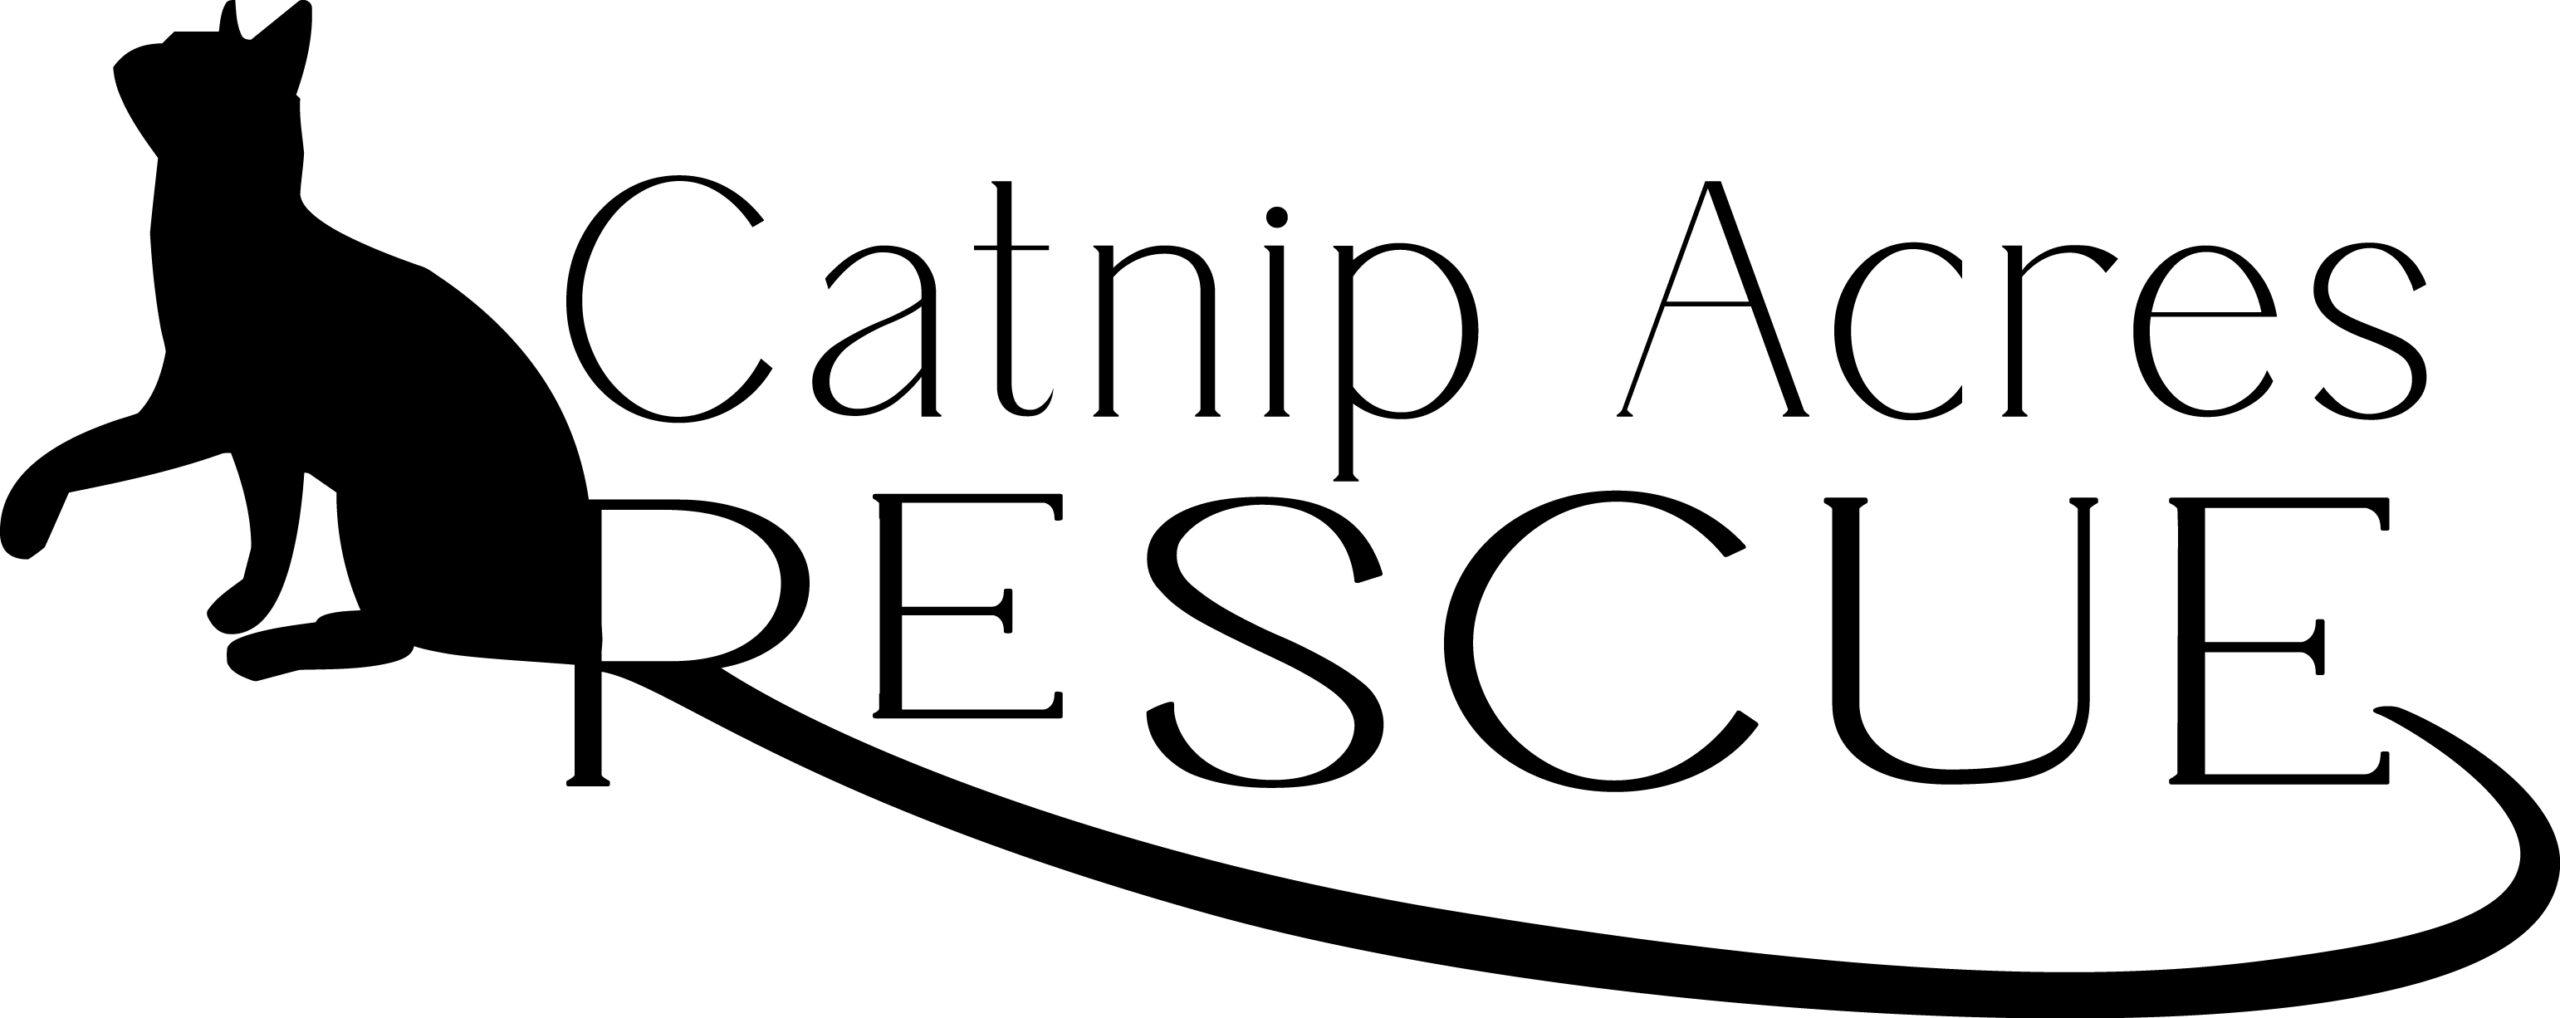 Catnip Acres Rescue